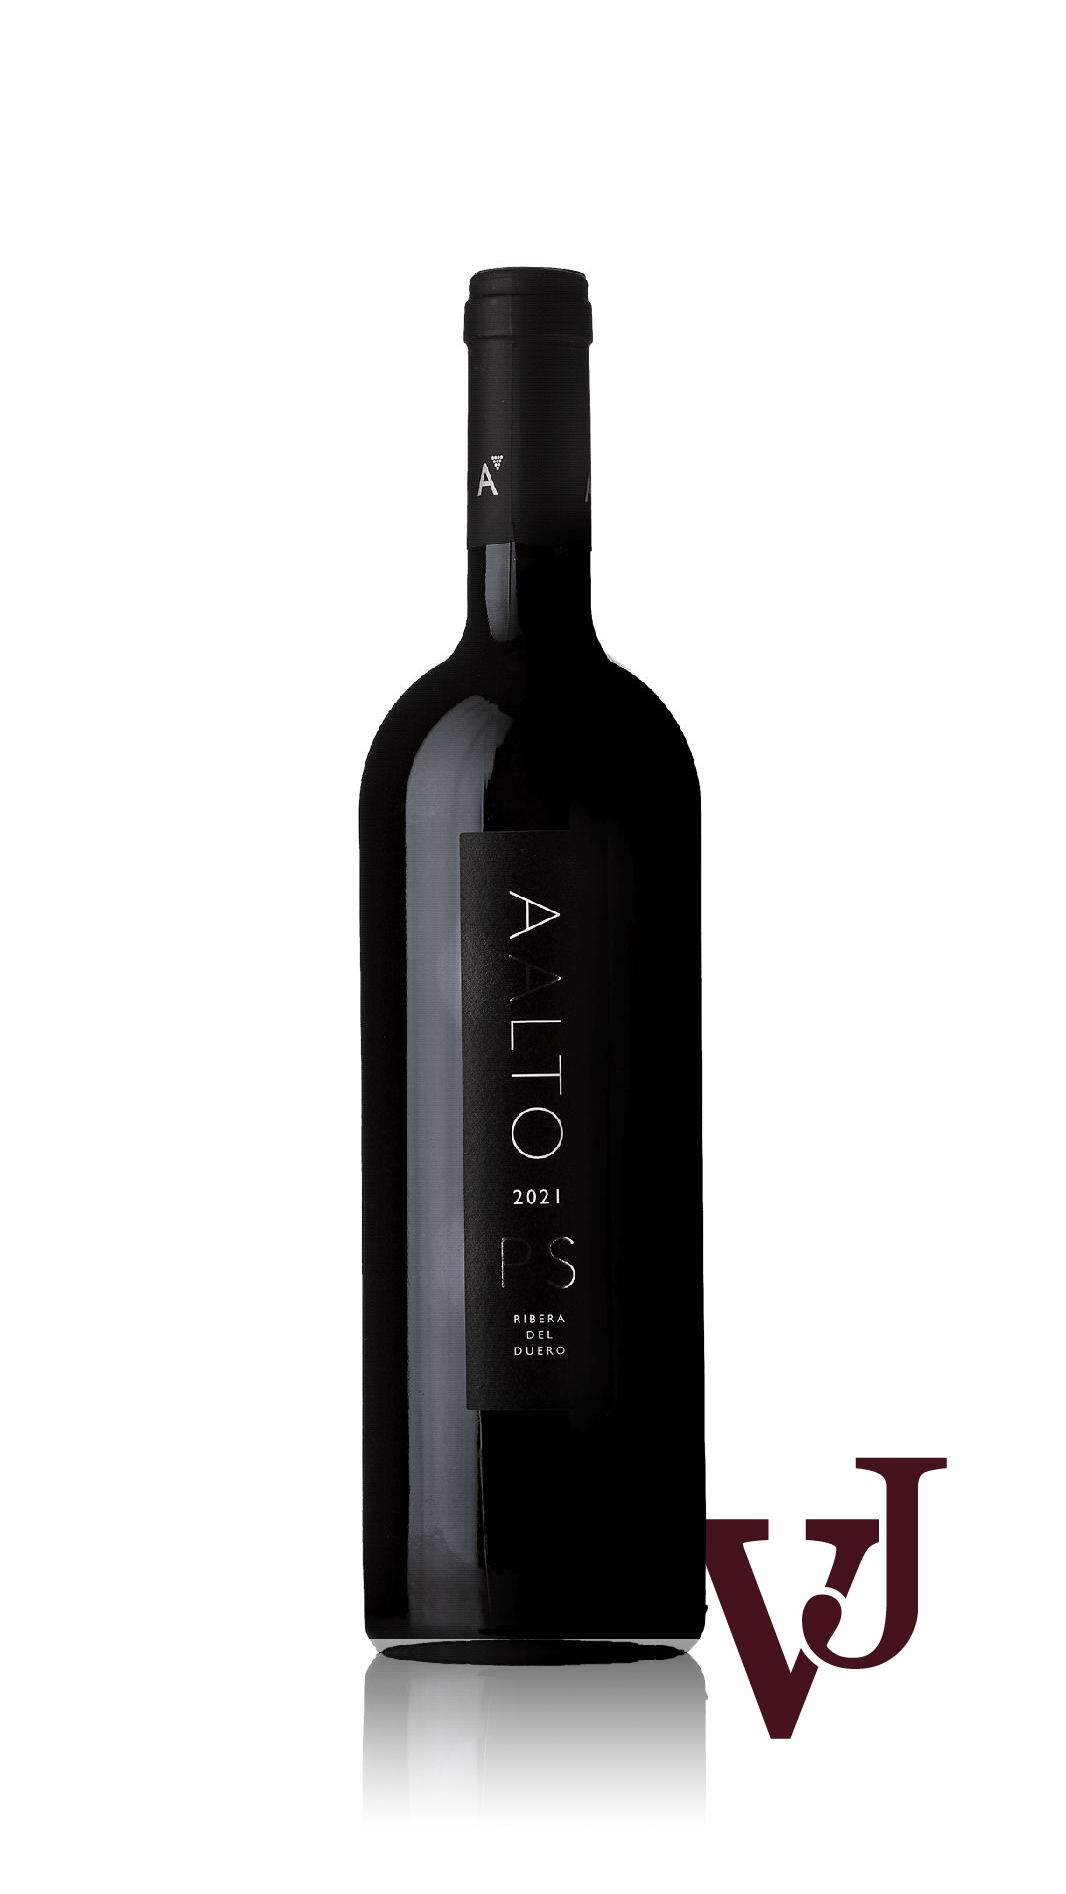 Rött Vin - Aalto PS 2021 artikel nummer 9321601 från producenten Aalto från området Spanien